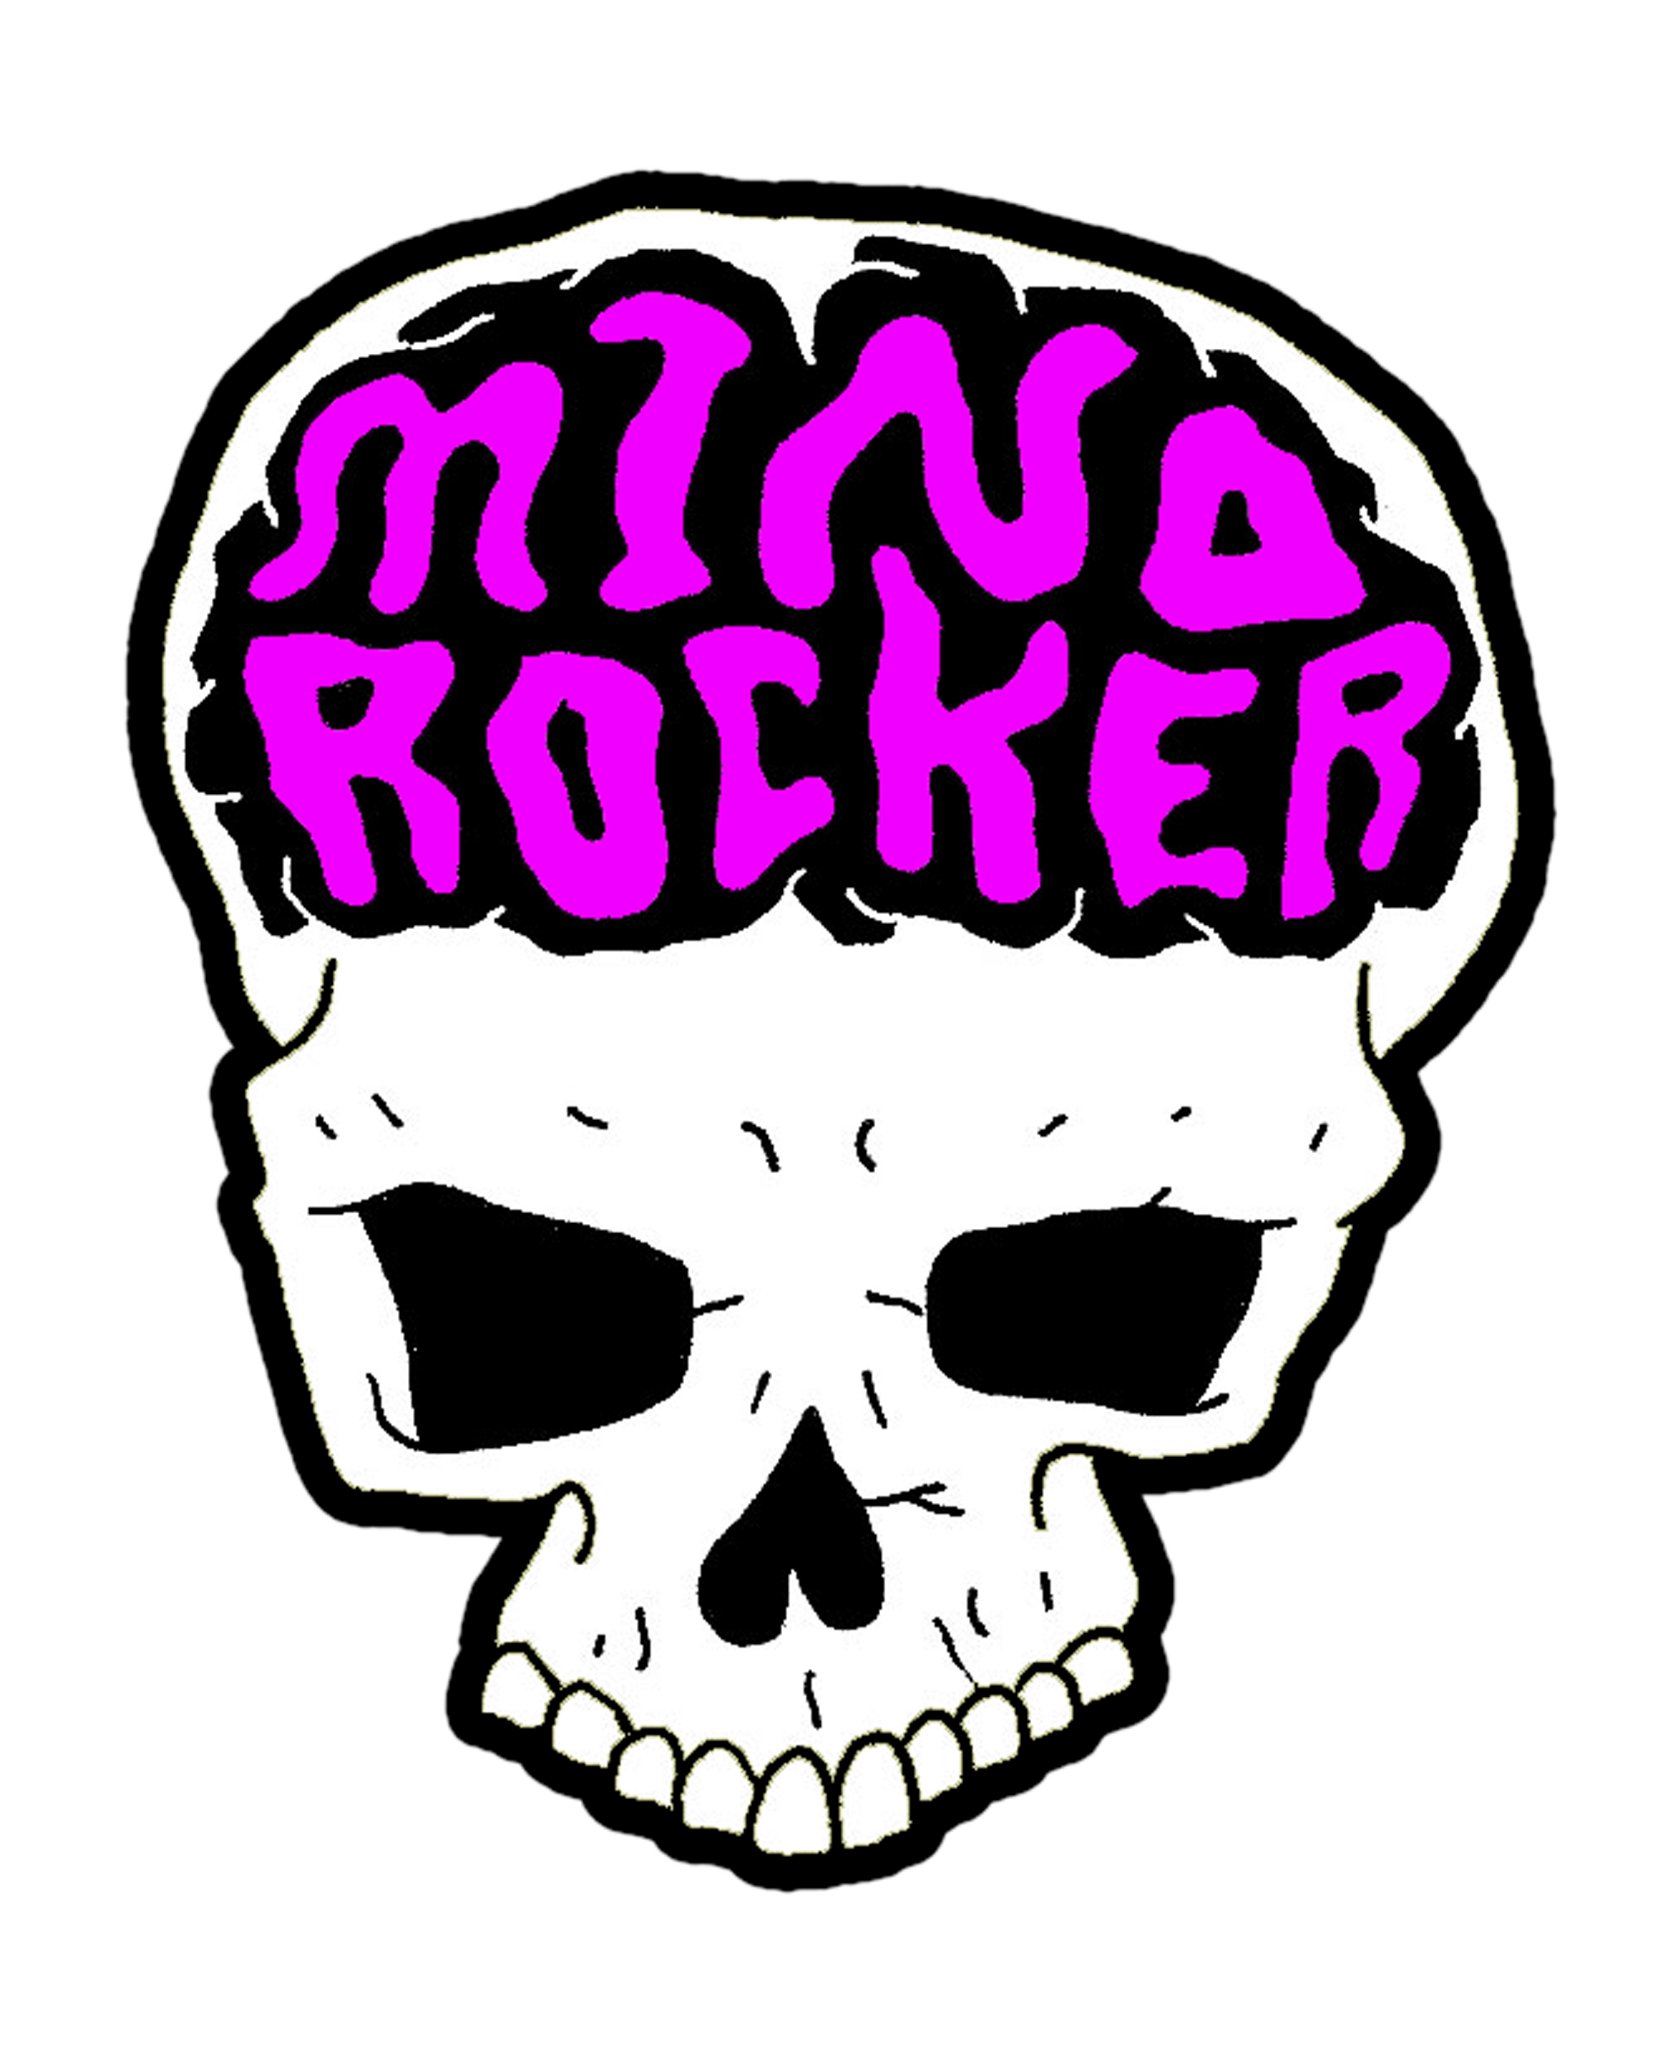 mind rocker sticker 8 x 10 test.jpg